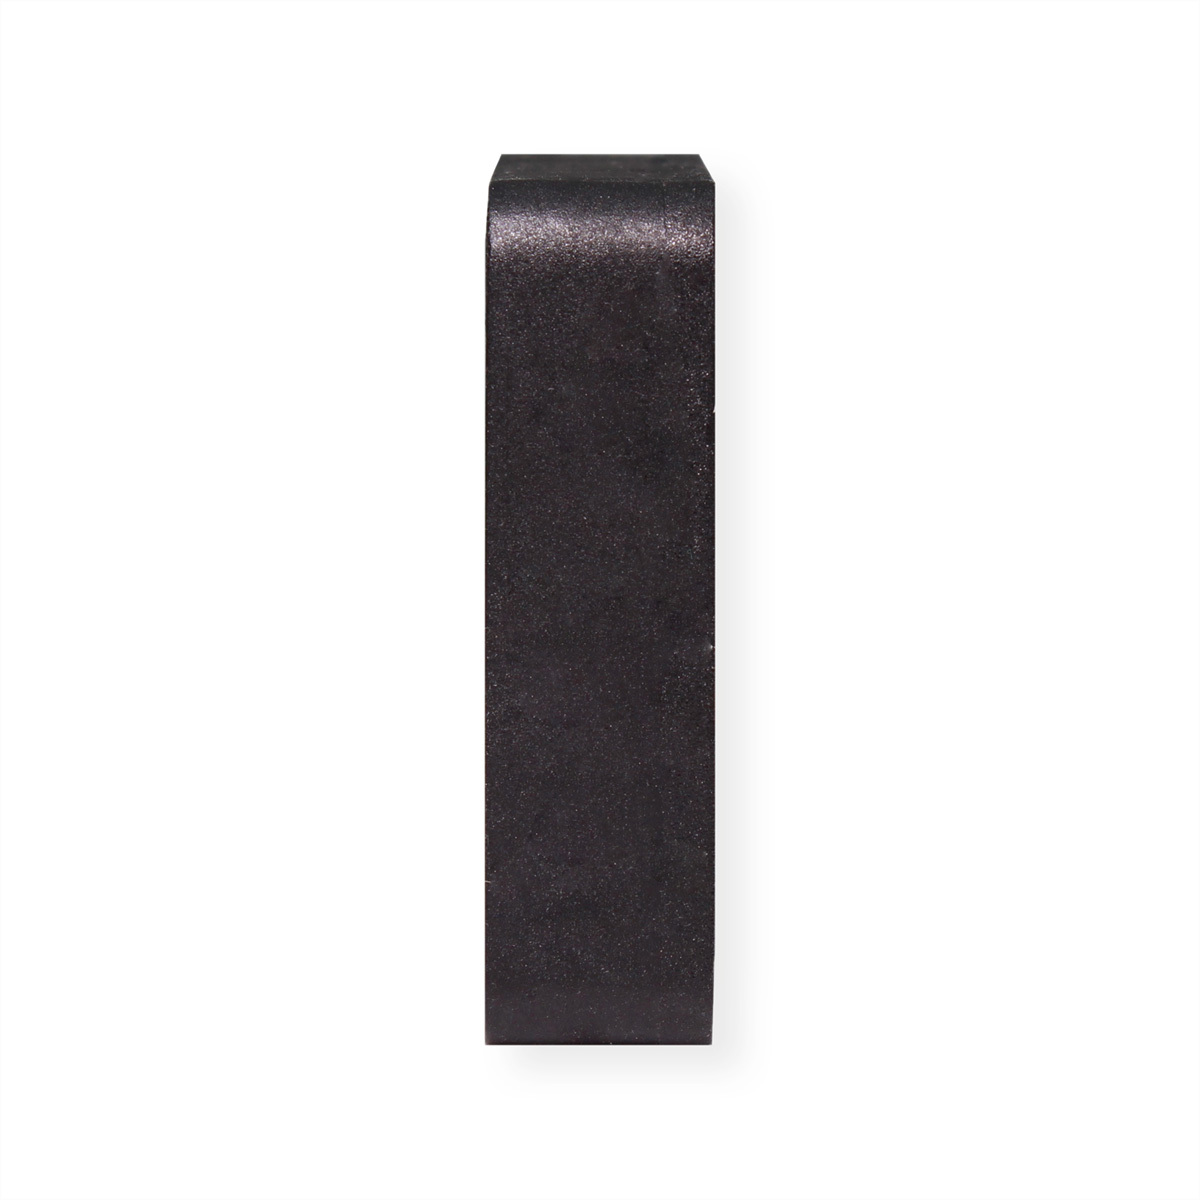 XILENCE XPF40.W 40mm Gehäuselüfter, 3PIN, Lüfter, schwarz White Box